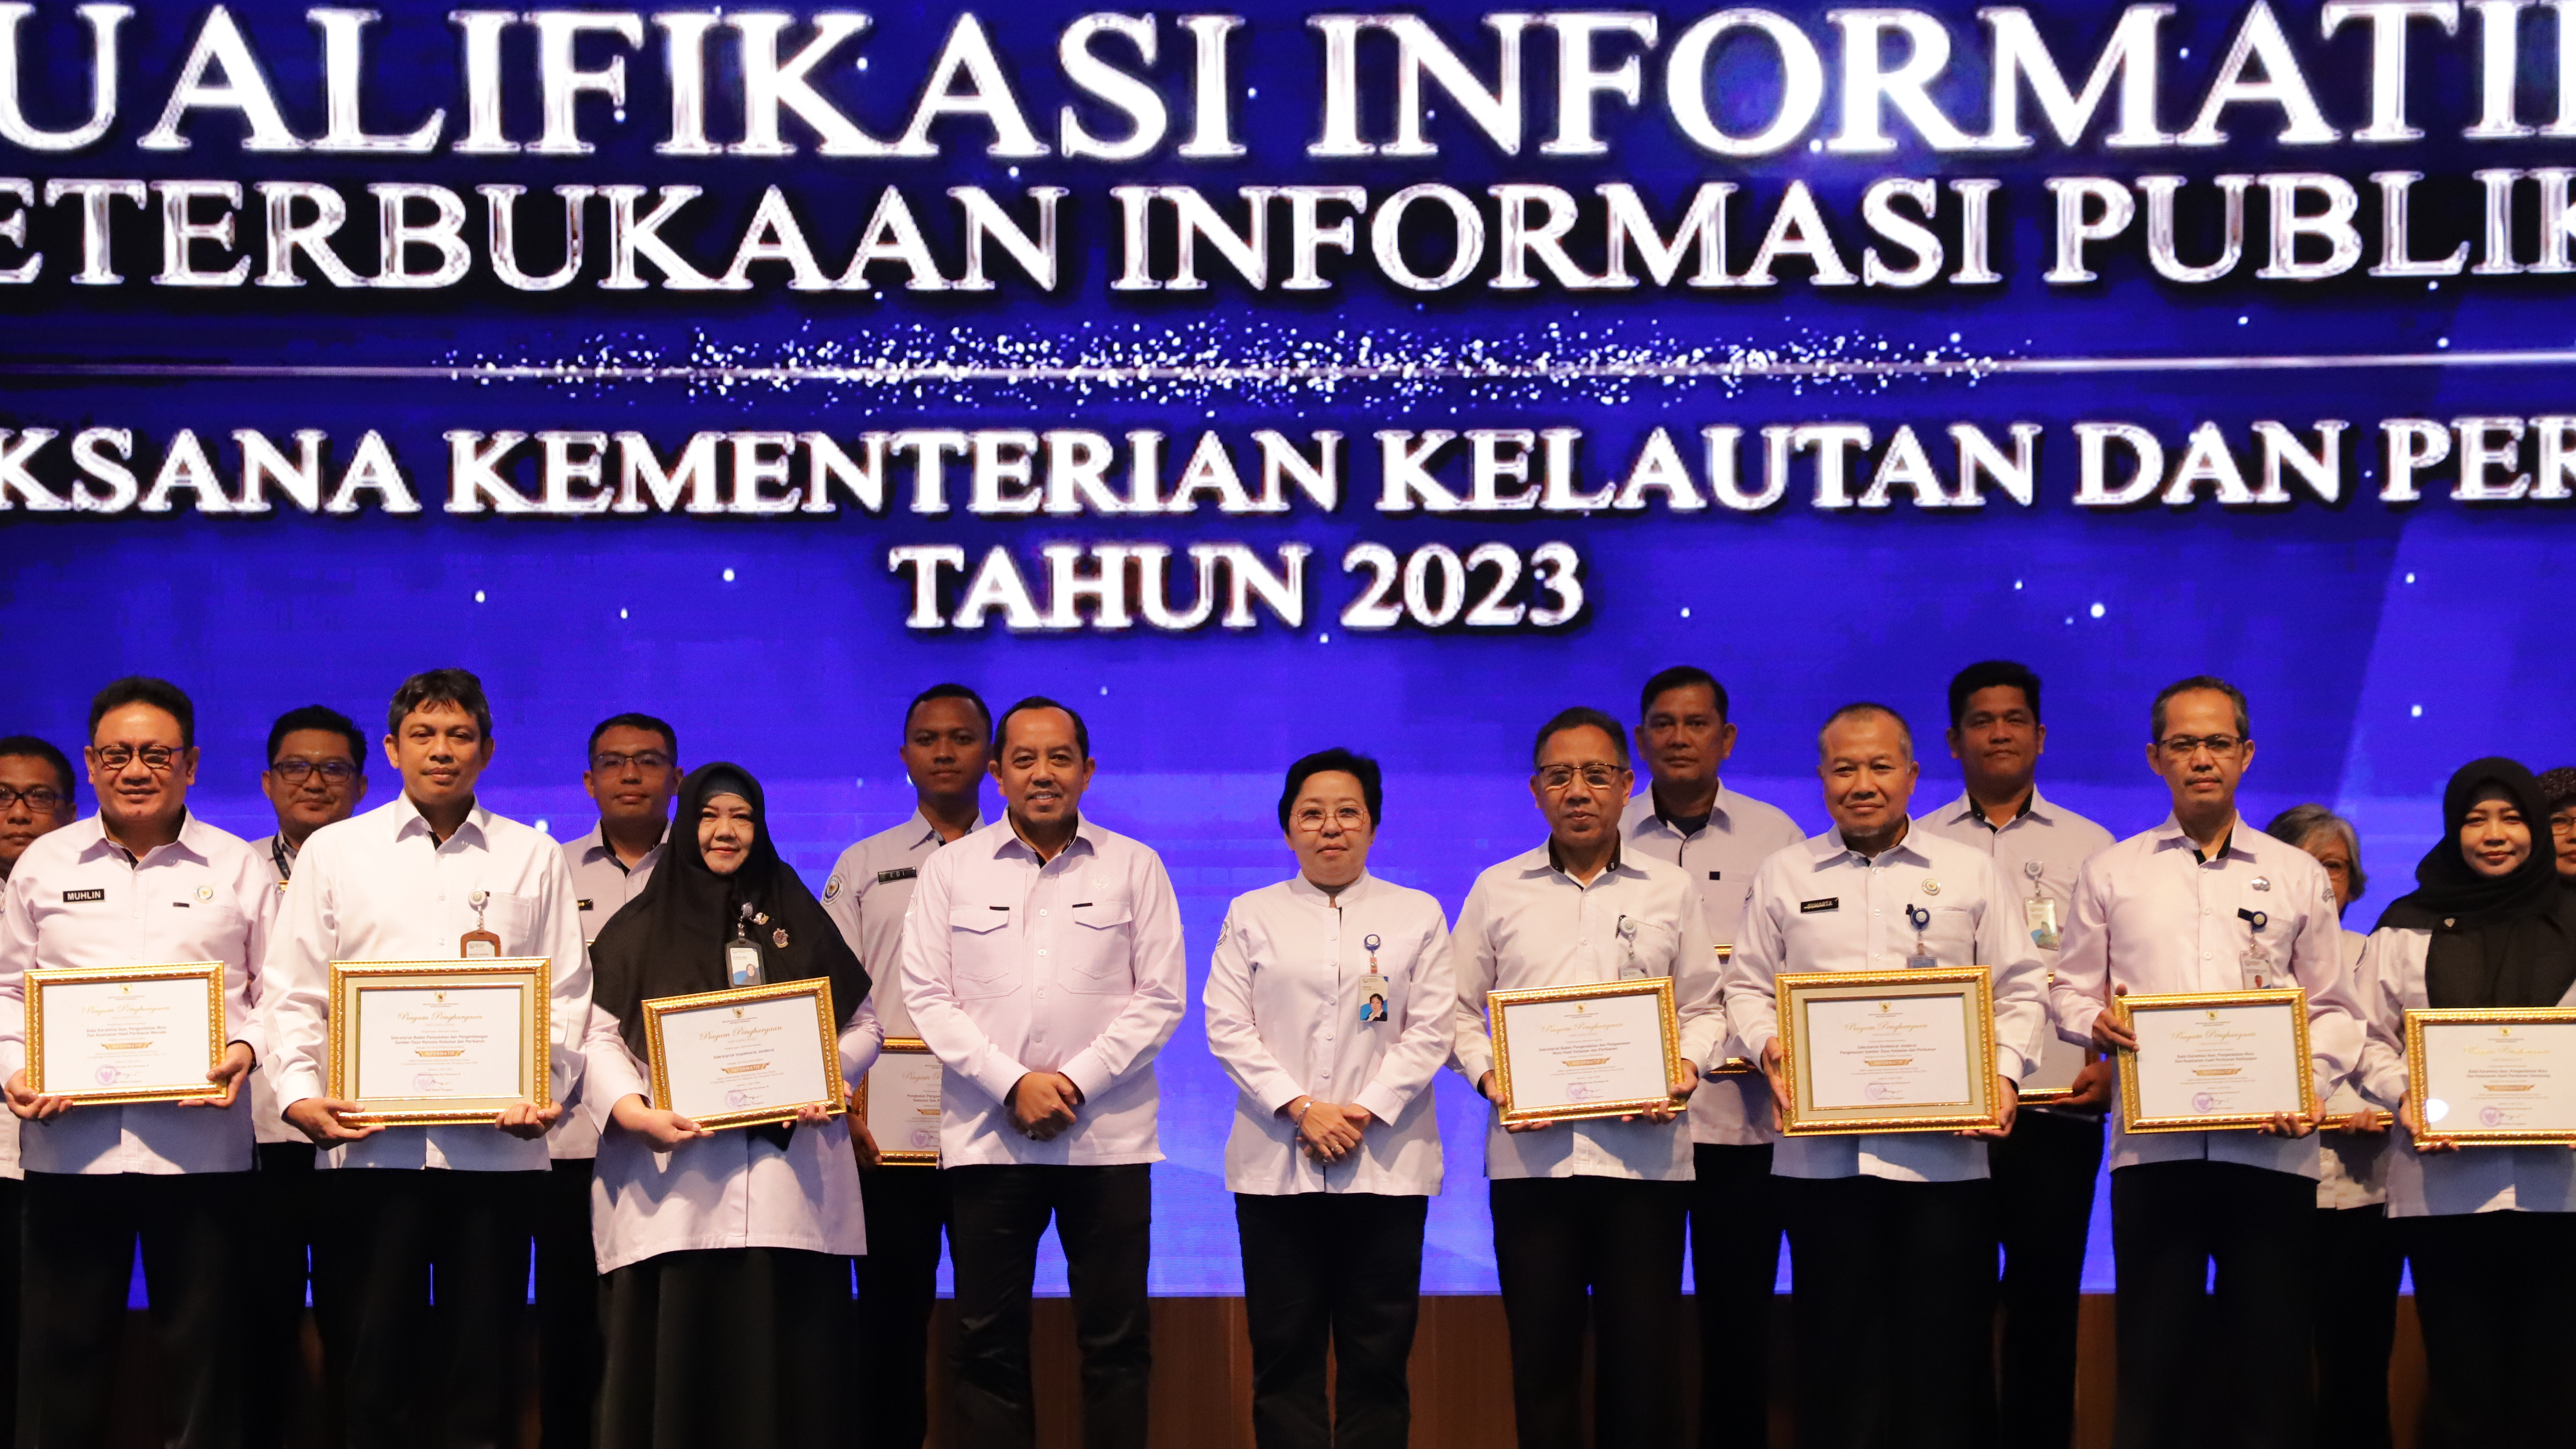 Itjen KKP Raih Penghargaan Unit Kerja Berpredikat Informatif